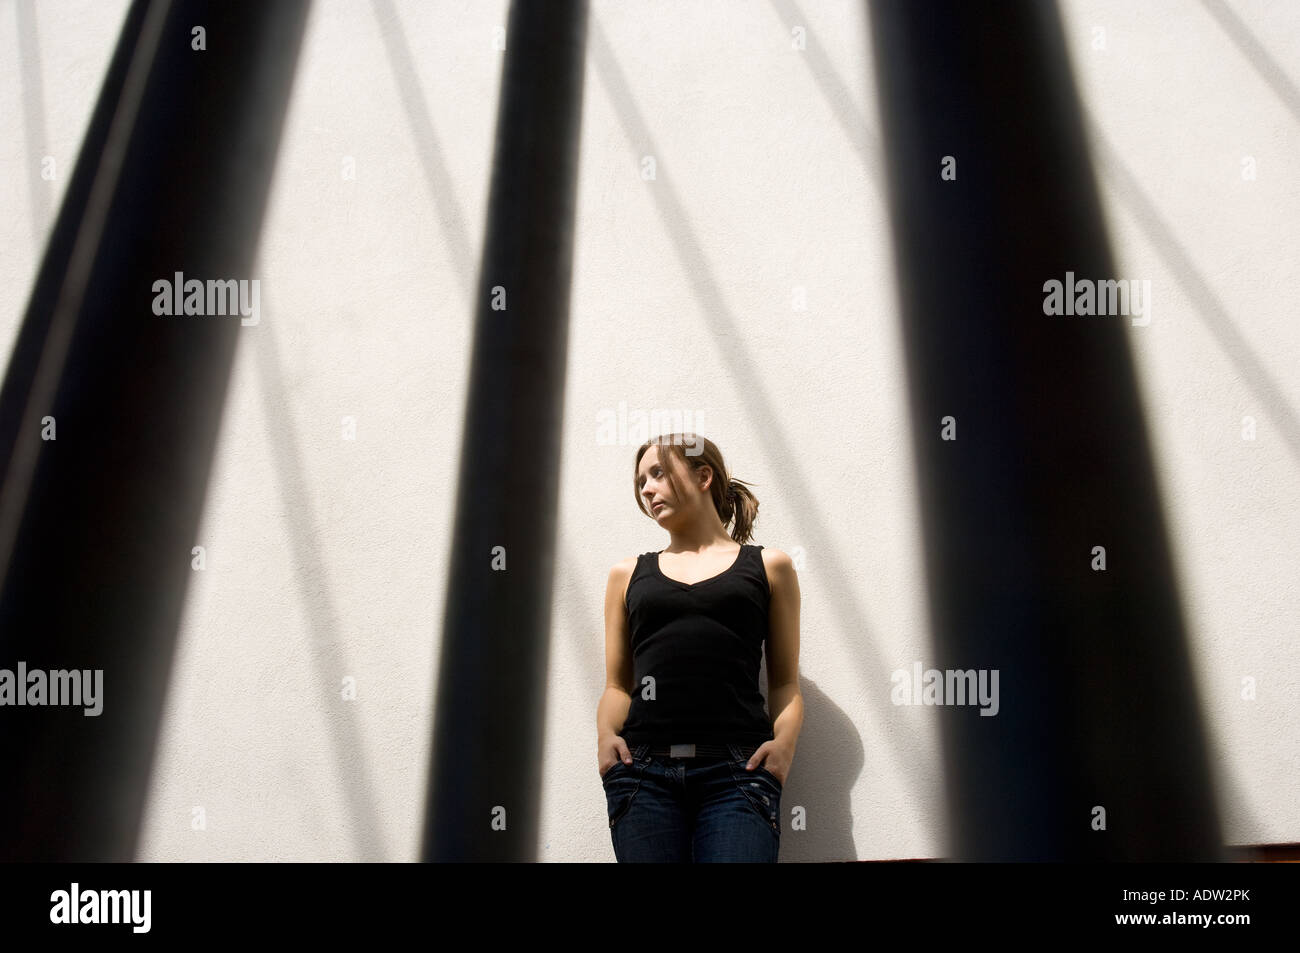 Jeune femme à l'intérieur avec les ombres de formes graphiques casting windows sur mur derrière elle à la cage ou comme une prison Banque D'Images